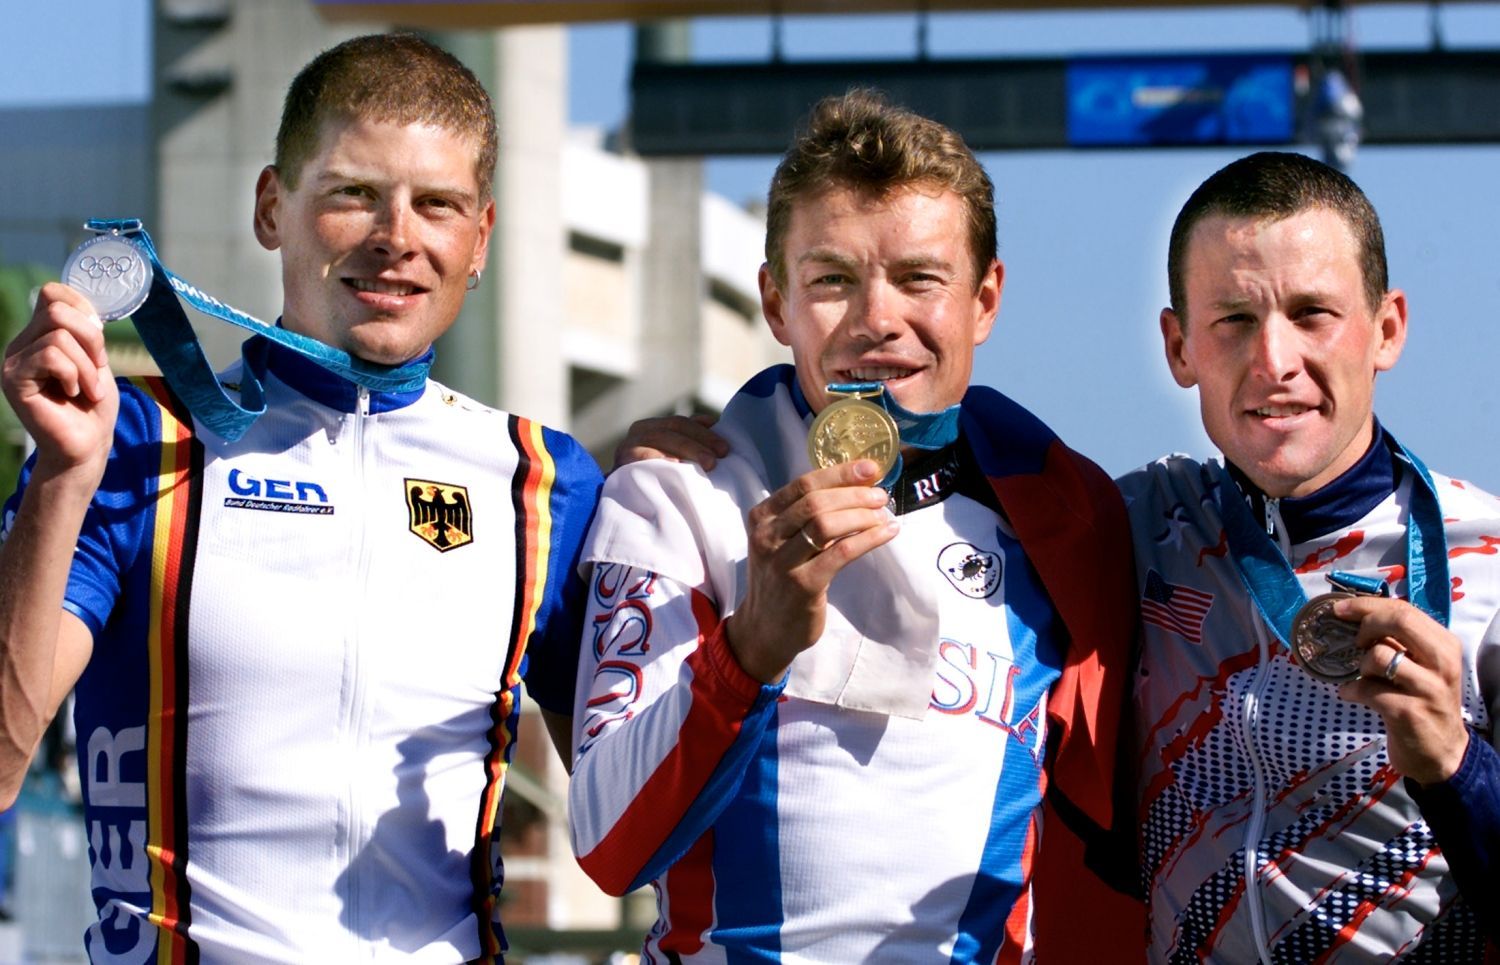 Americký cyklista Lance Armstrong (vpravo) pózuje společně s Rusem Vjačeslavem Jekimovem (uprostřed) a Němcem Janem Ullrichem s medailemi na OH 2000 v Sydney.